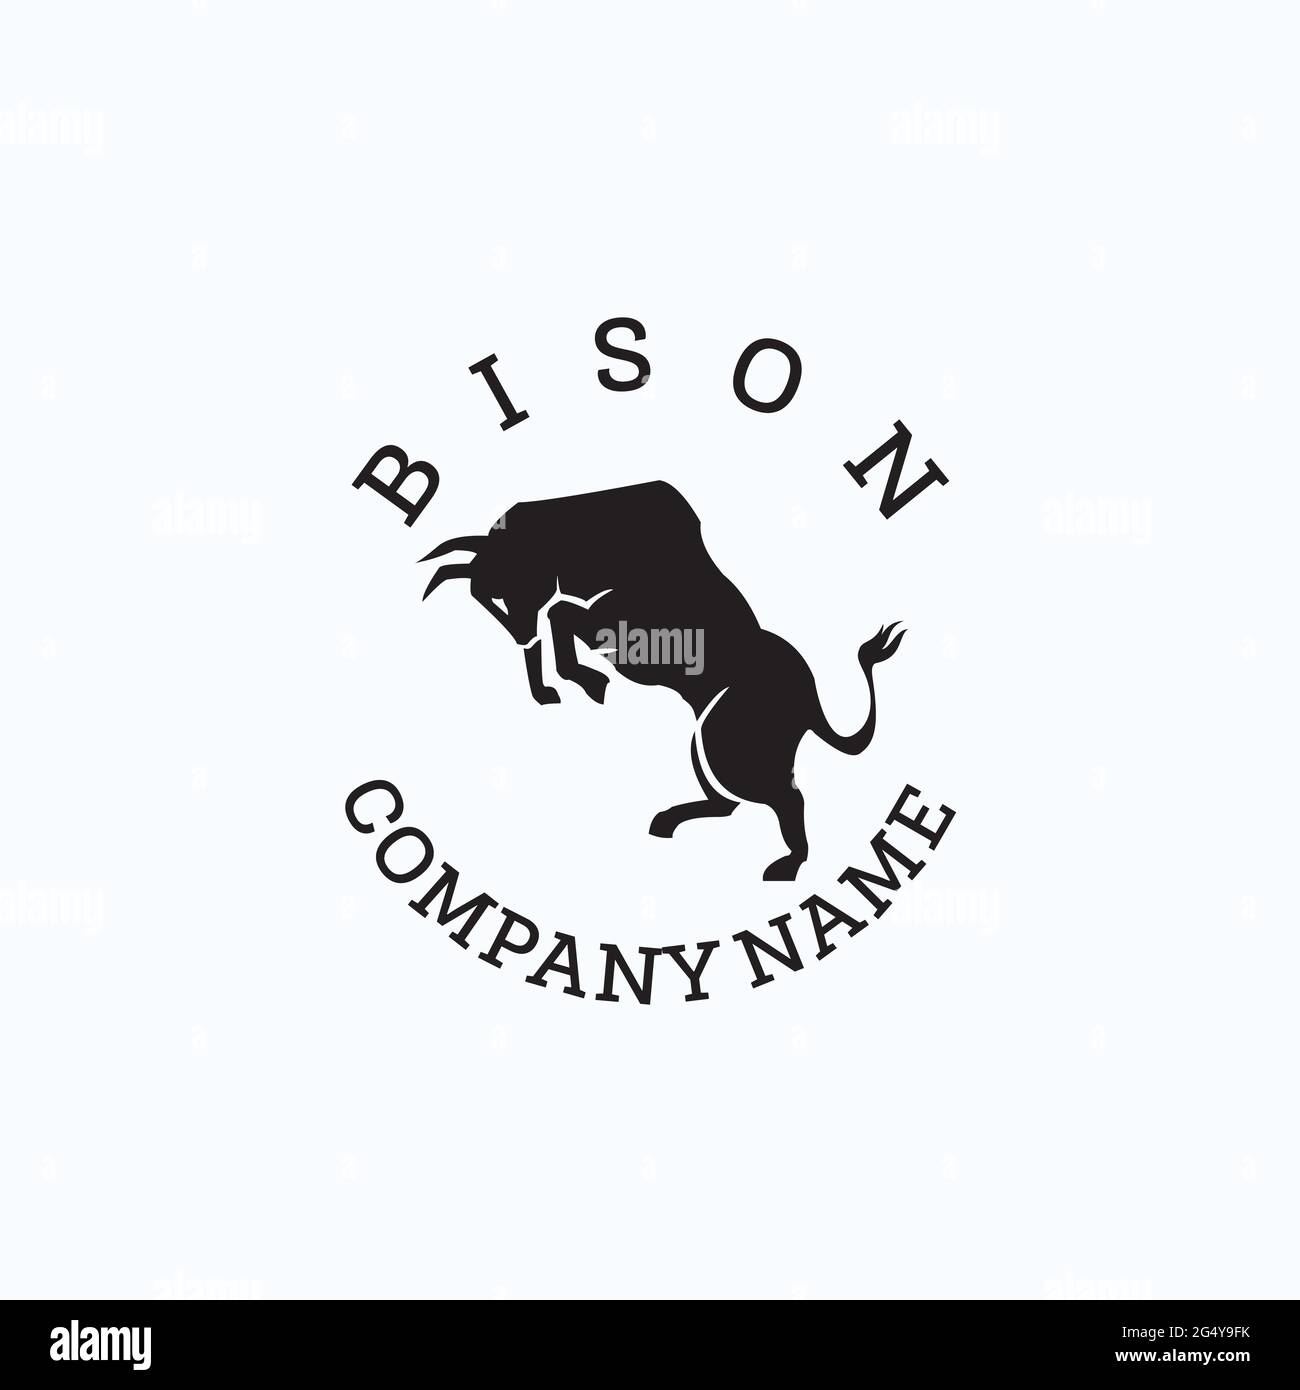 logo bison inspiré du design exclusif Illustration de Vecteur